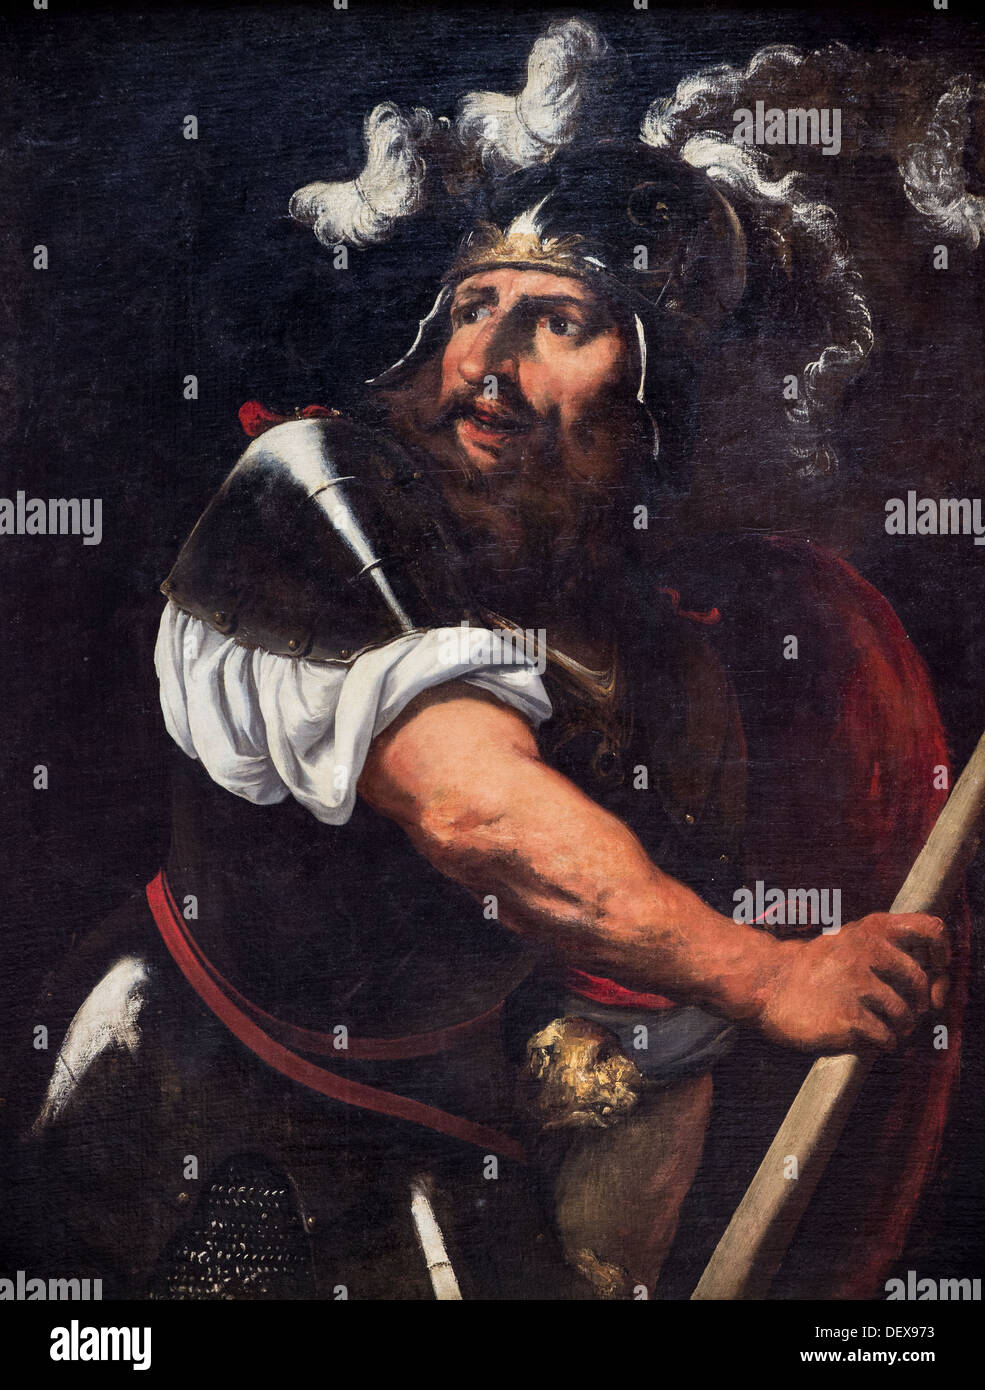 17e siècle - Ajax, vers 1650 - Pietro Muttoni connu sous le nom de Pietro Della Vecchia huile sur toile Banque D'Images